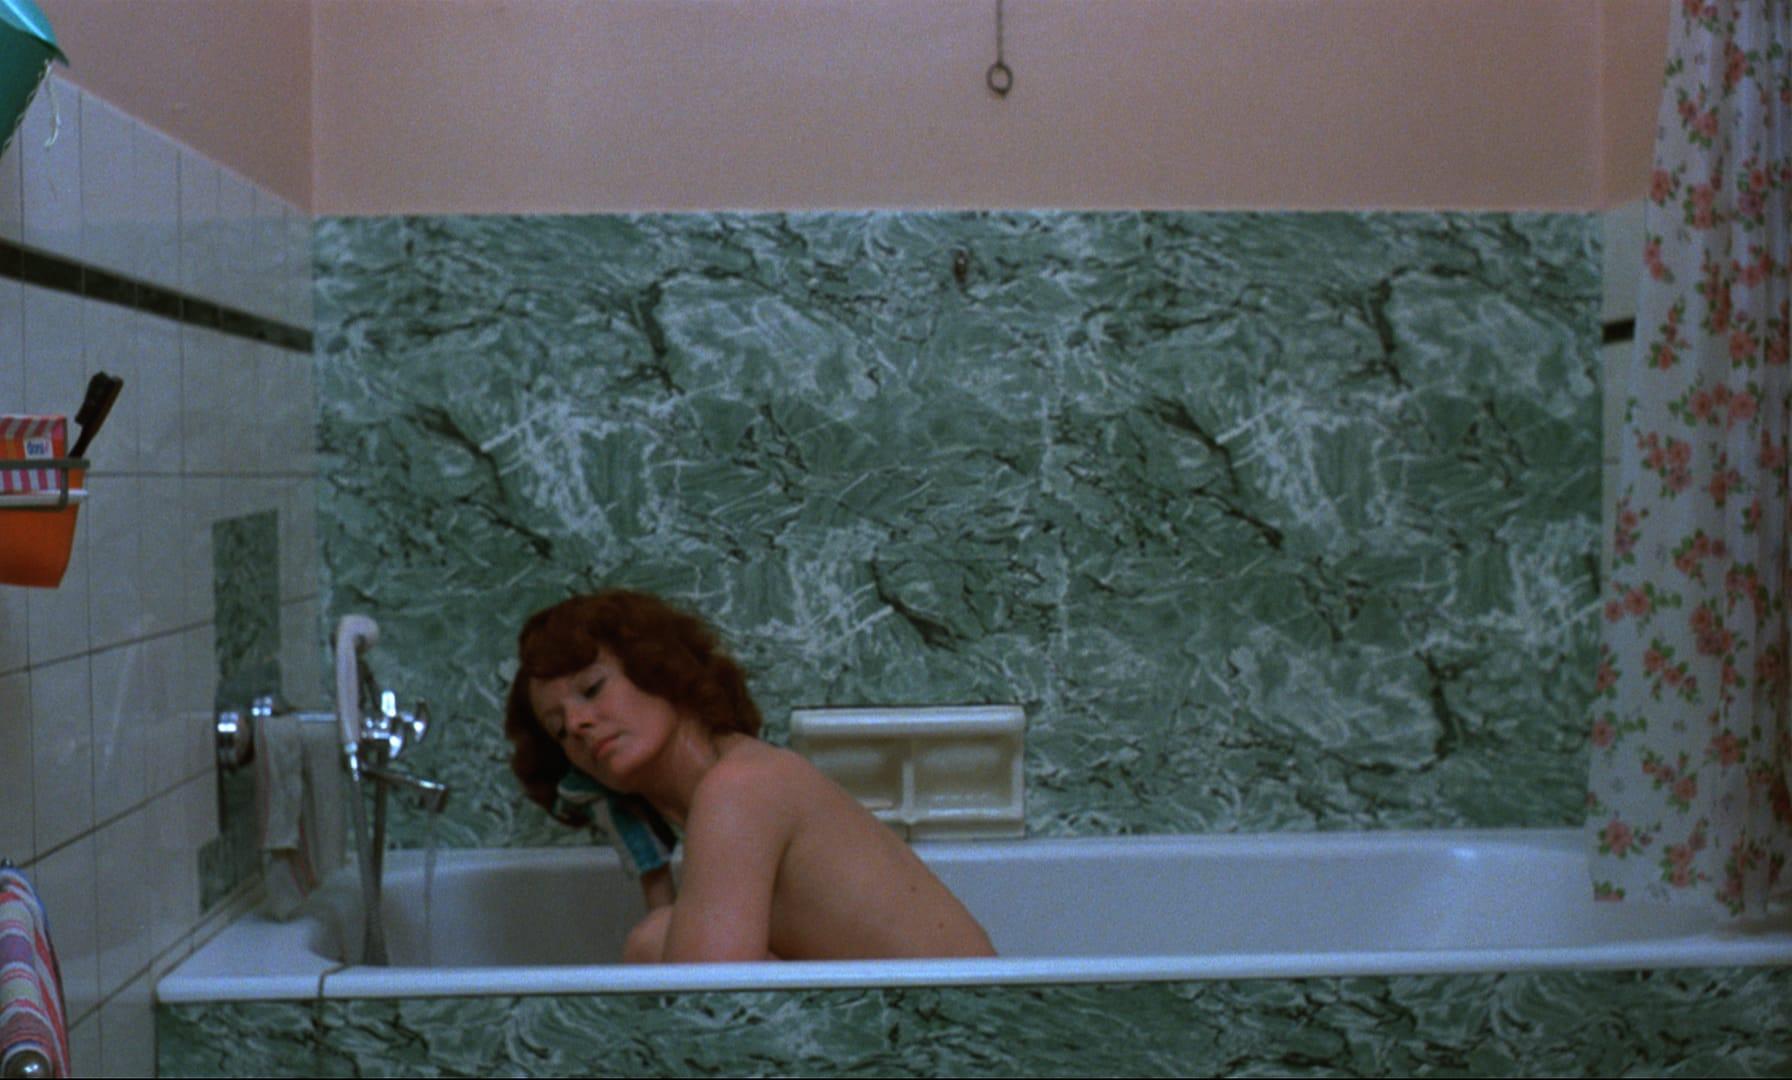 A woman sitting in a spartan bathtub, rinsing her right ear.